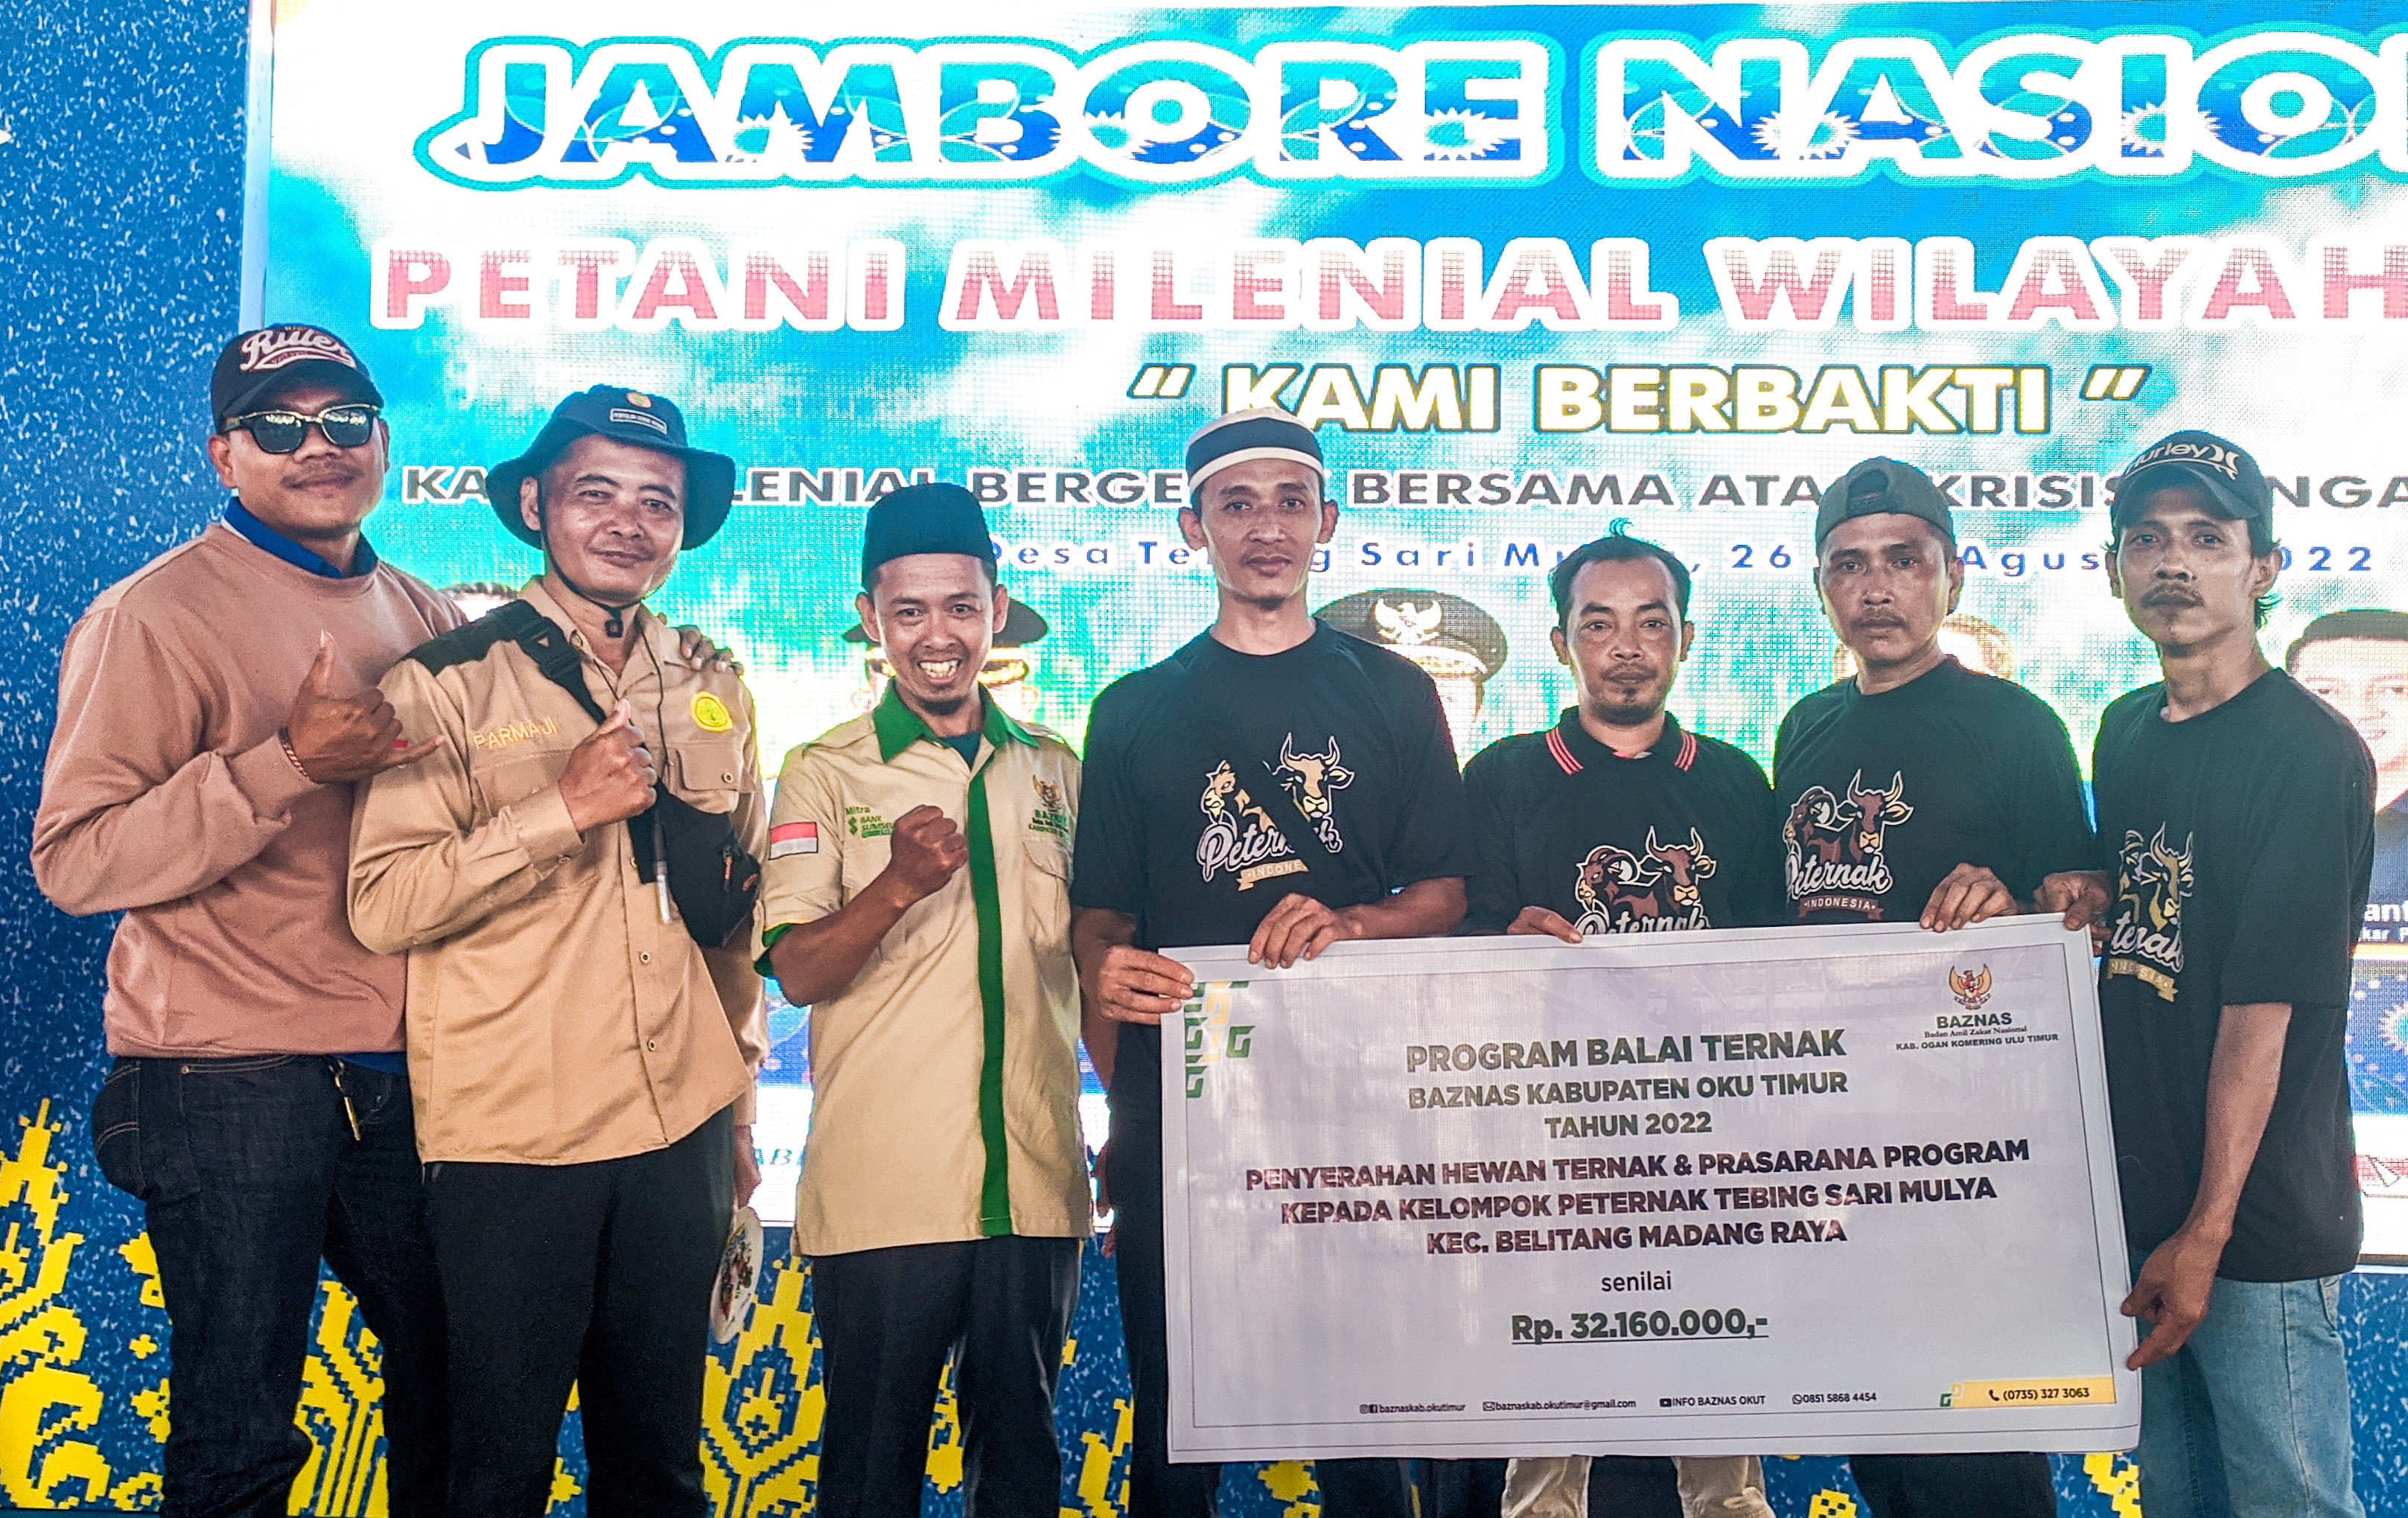 Baznas Kabupaten OKU Timur Launching Program Balai Ternak